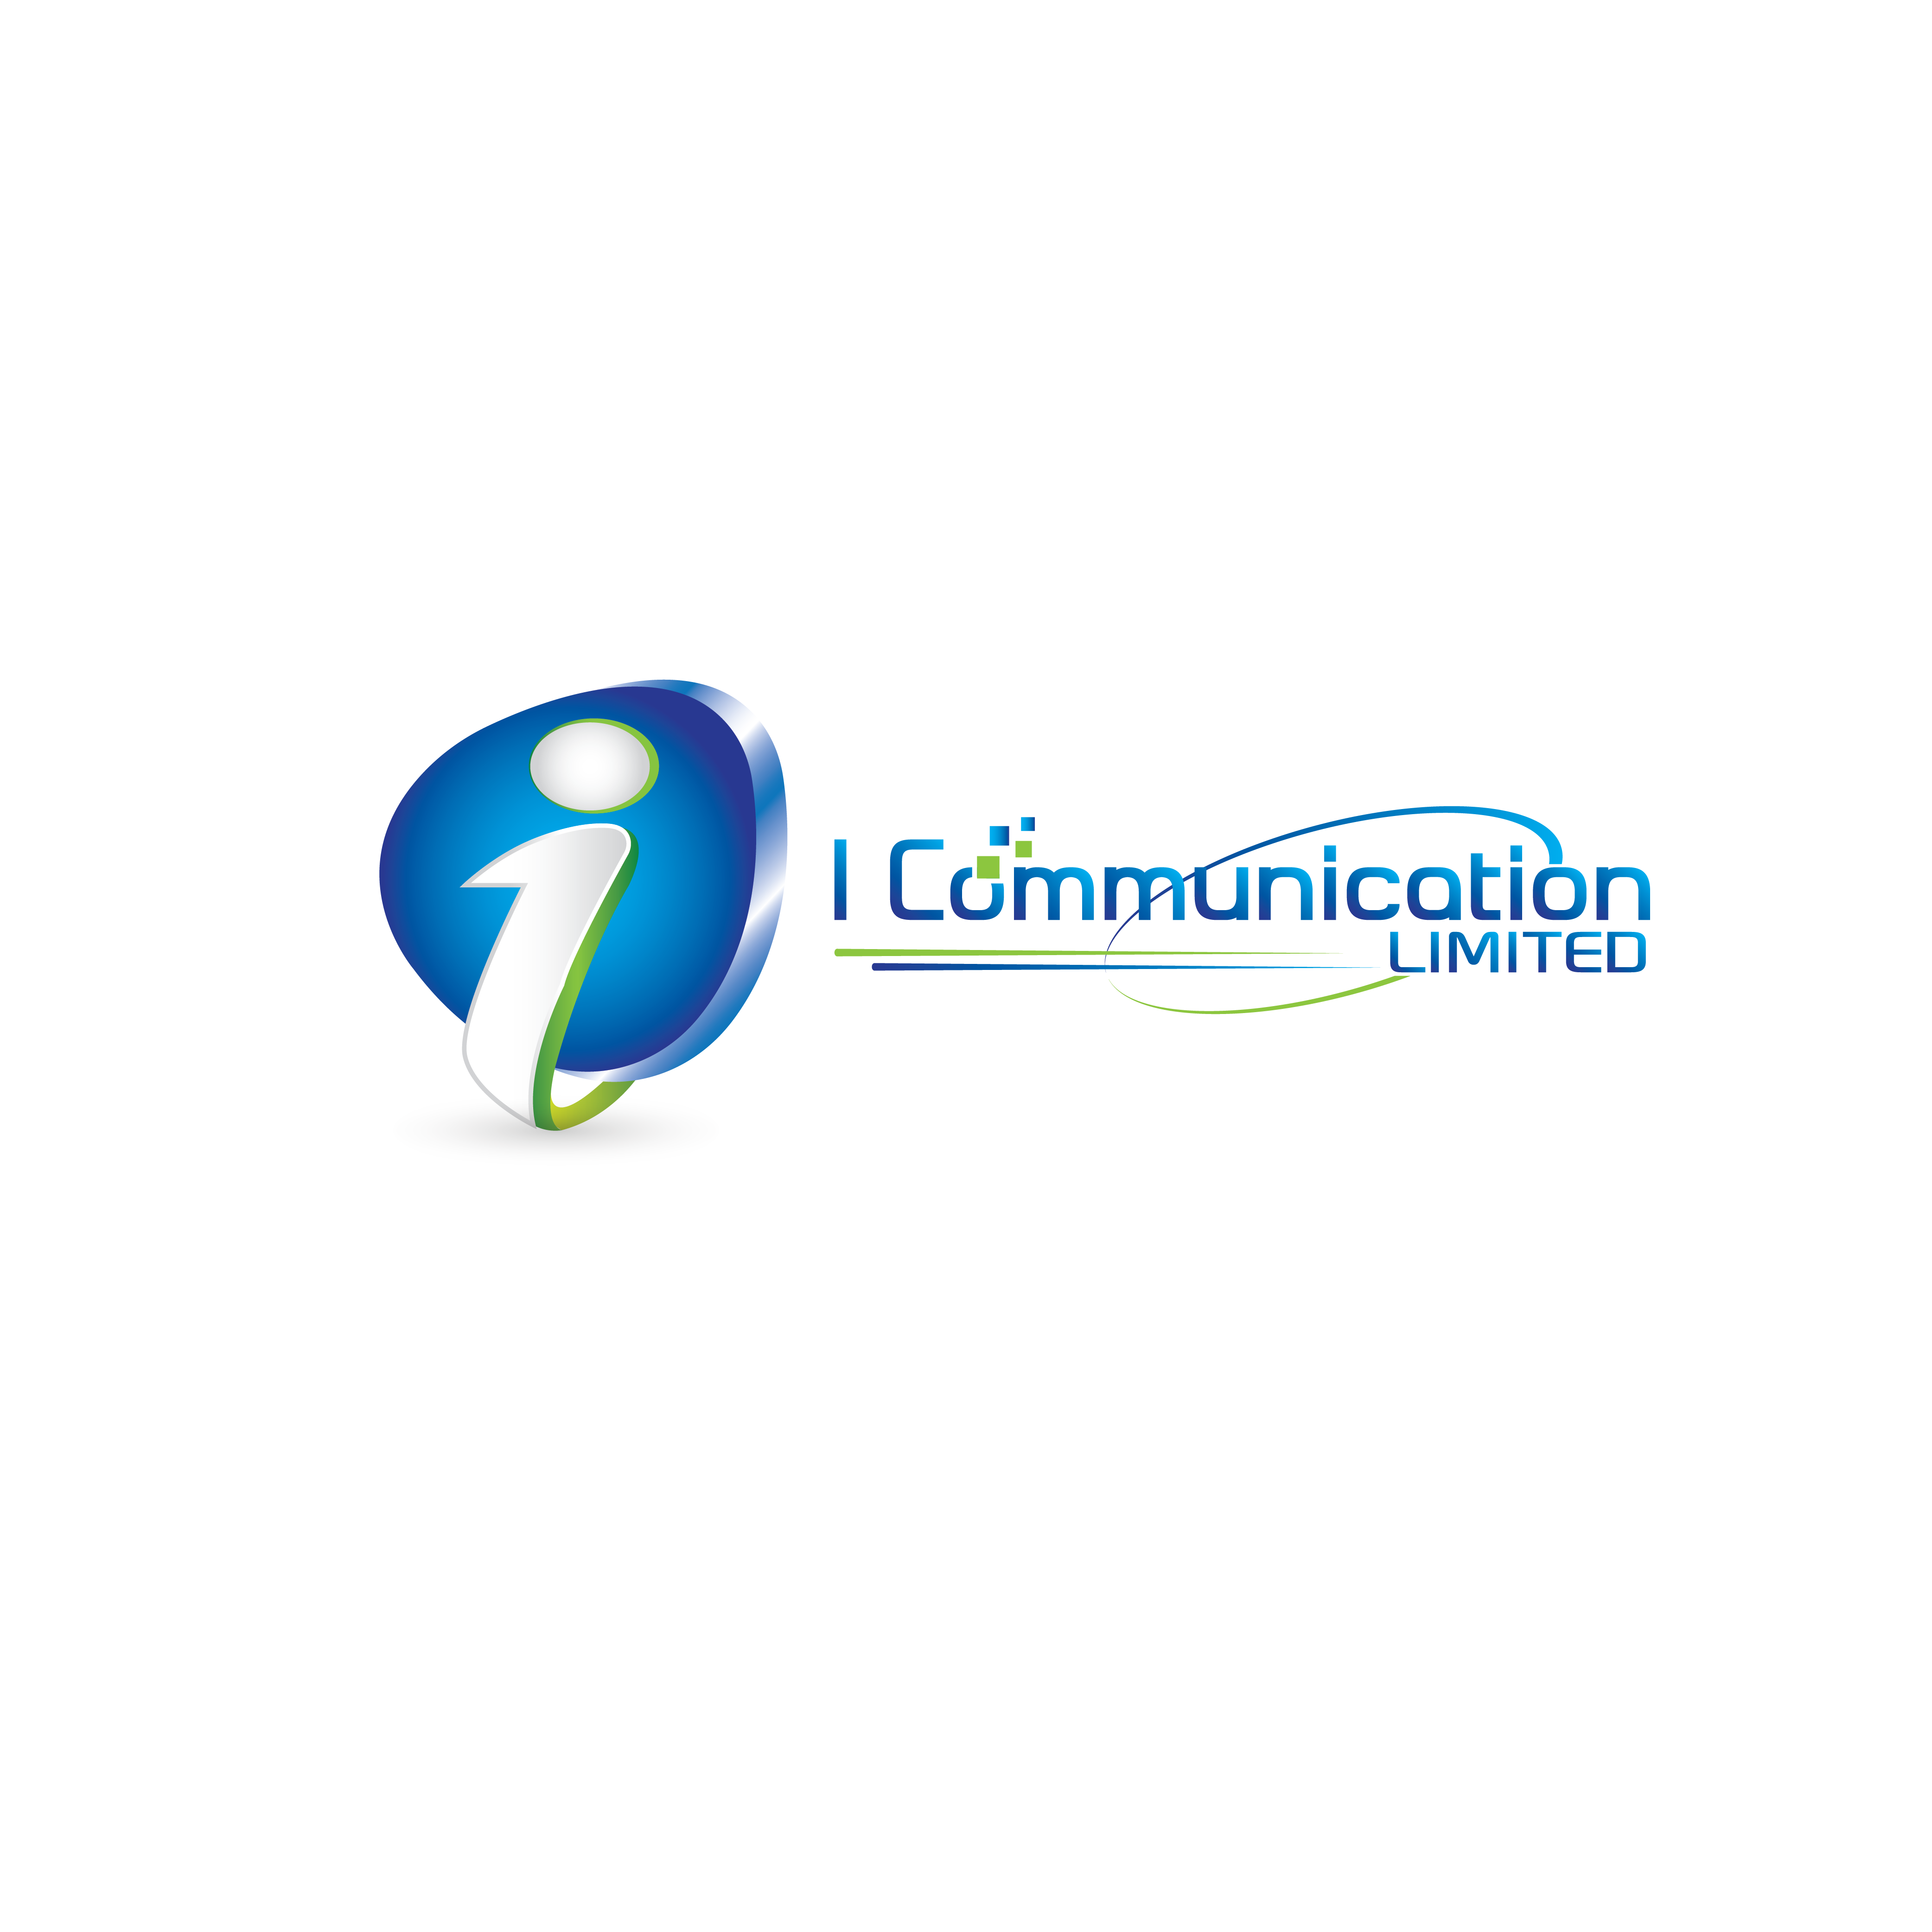 I Communication Limited -logo